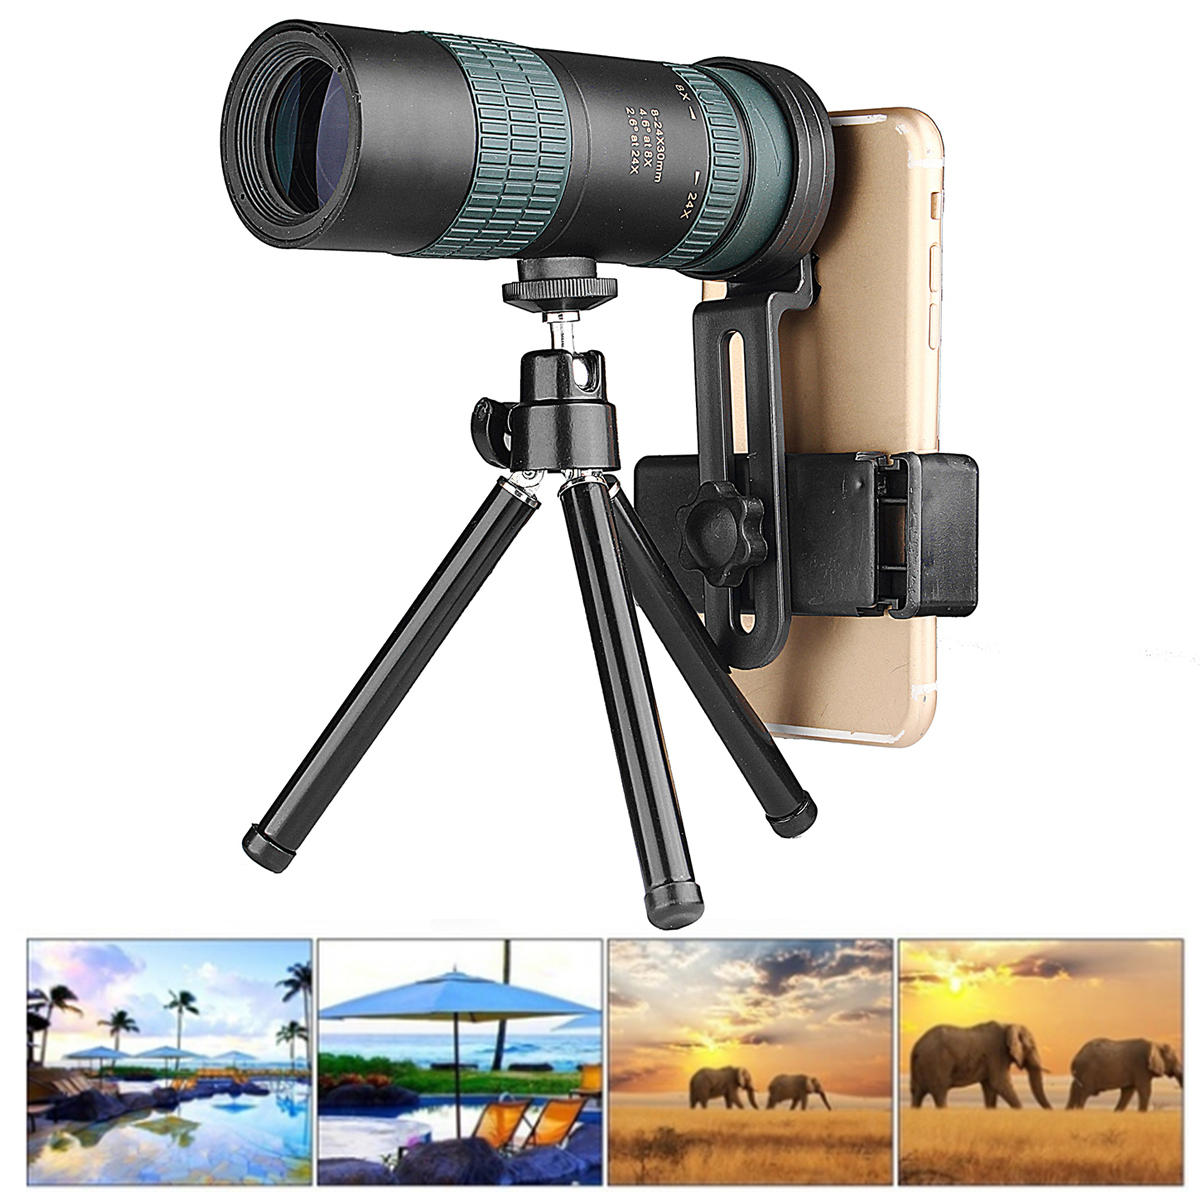 Monocular de zoom ajustável 8-24X30 com lente BAK4 e foco duplo para uso ao ar livre durante o acampamento.